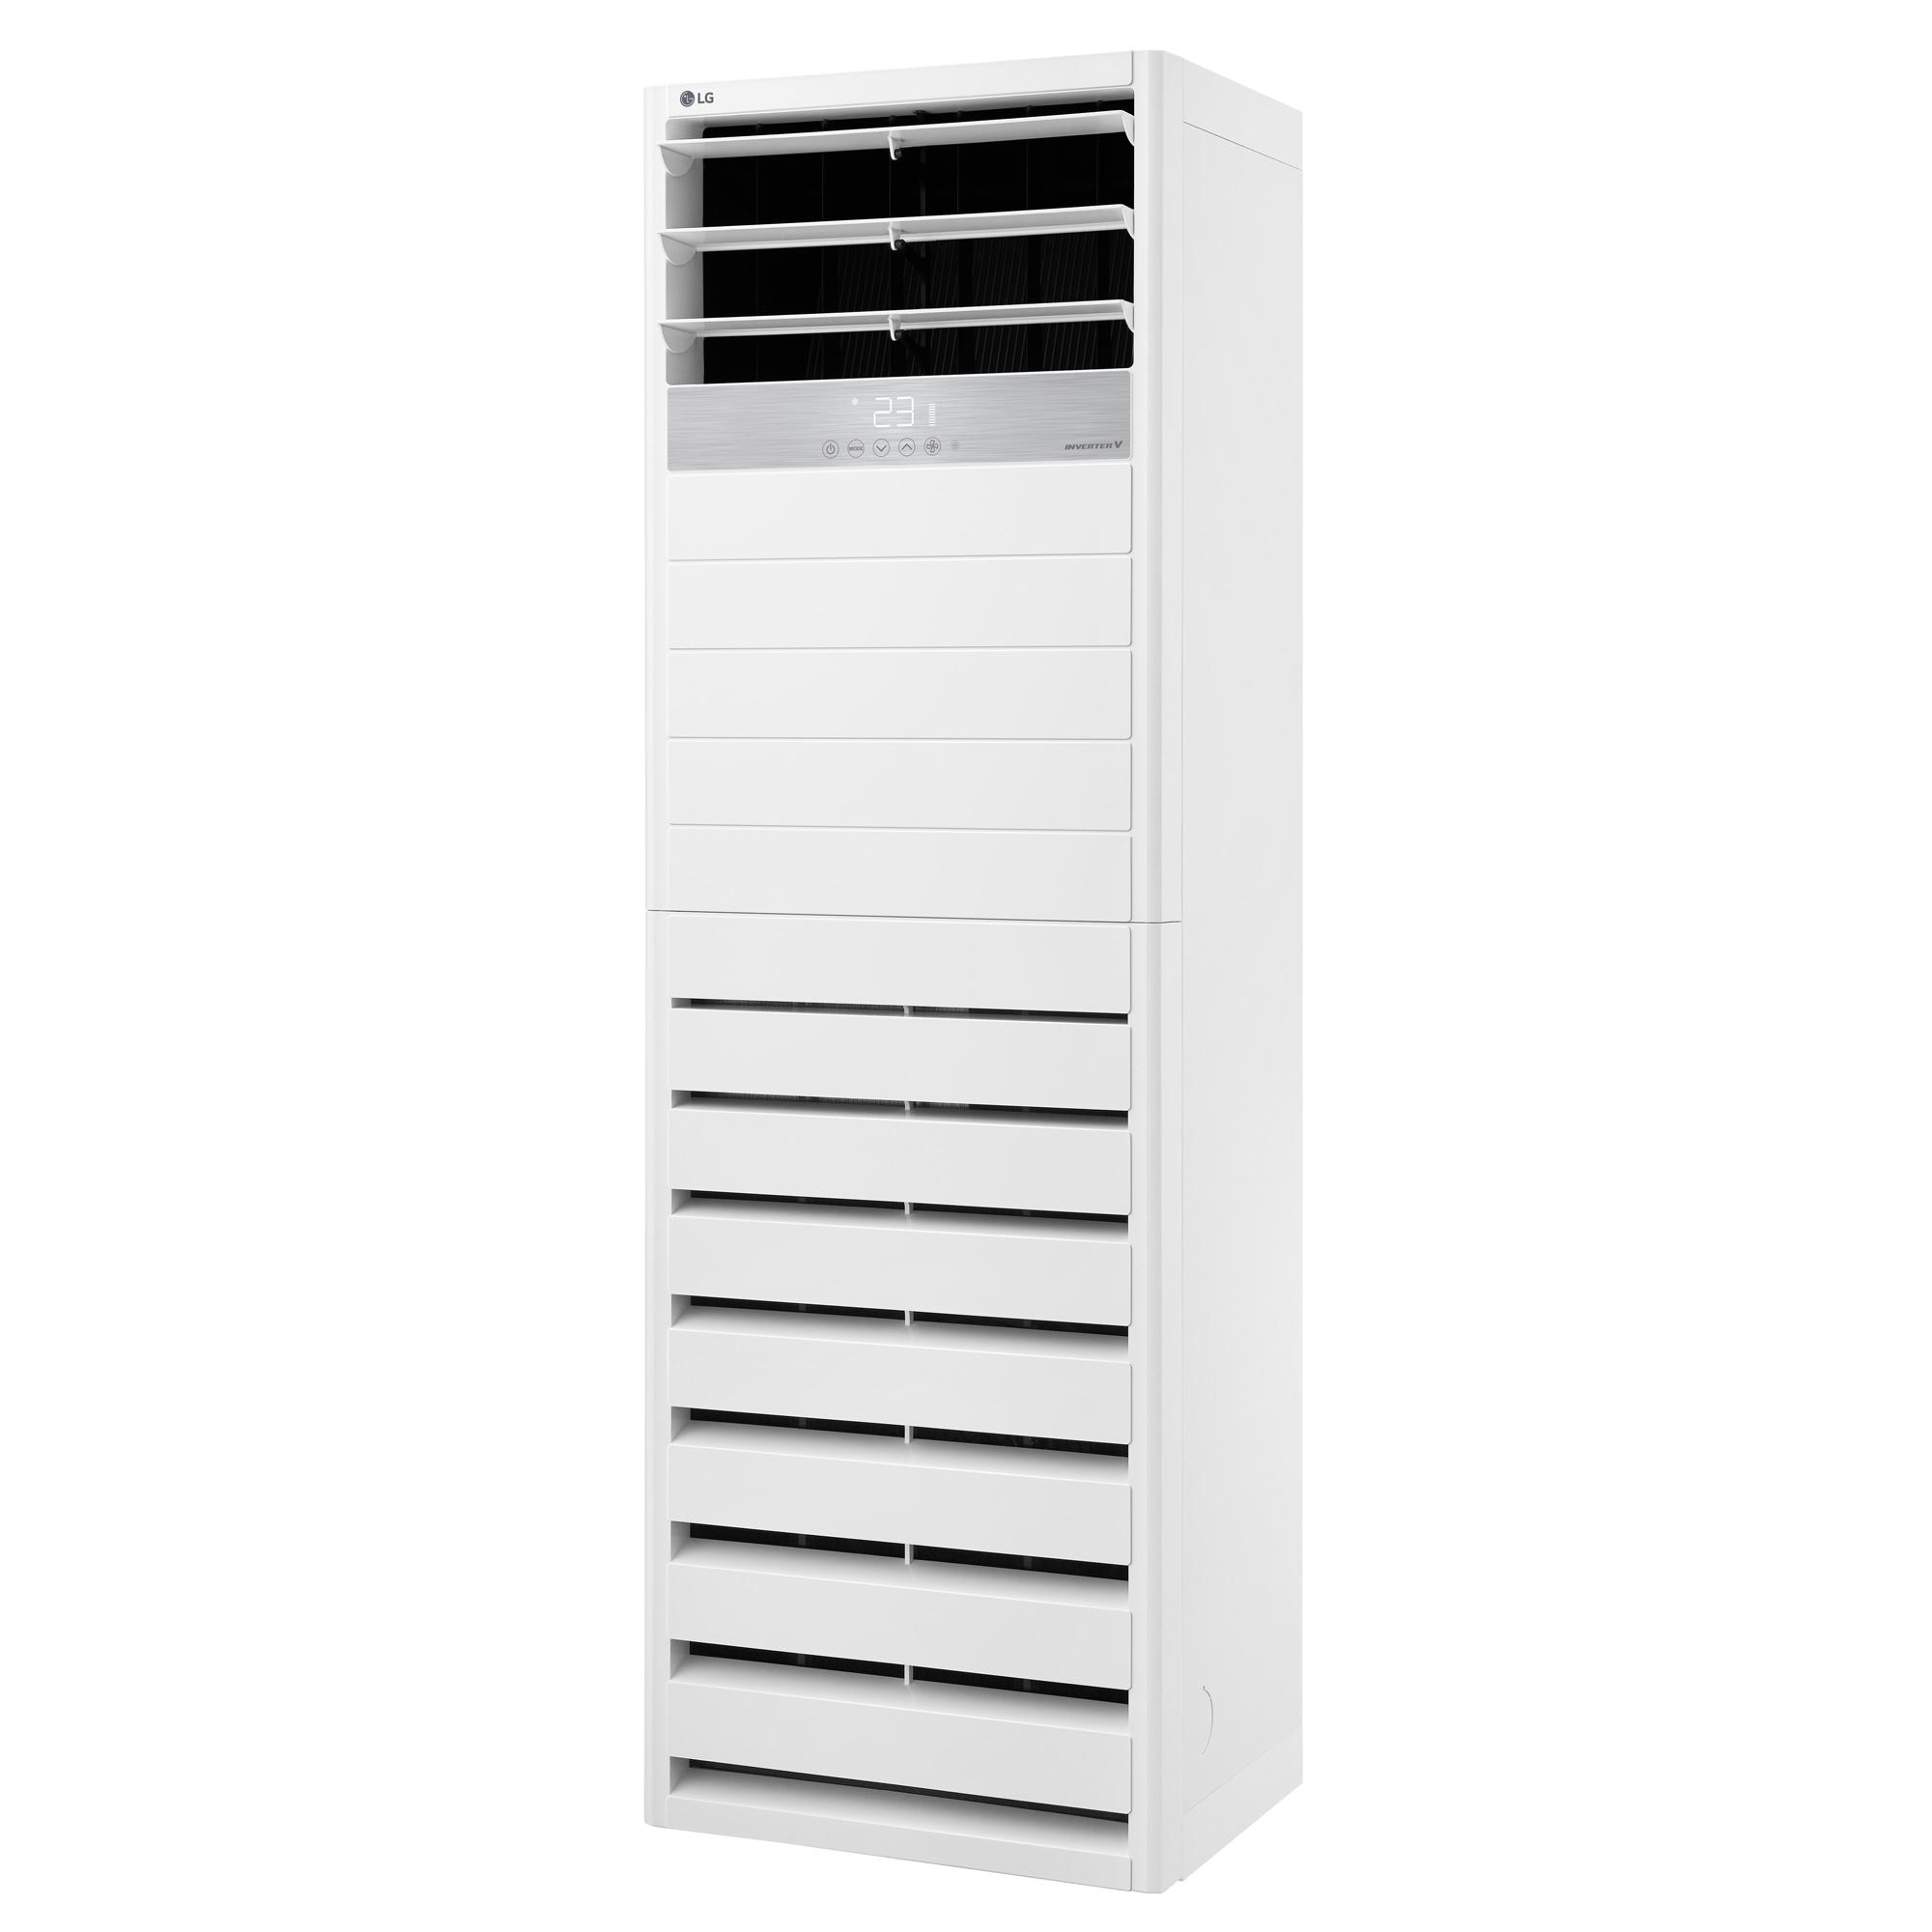 Máy lạnh tủ đứng LG APNQ30GR5A3 (3.0Hp) Inverter